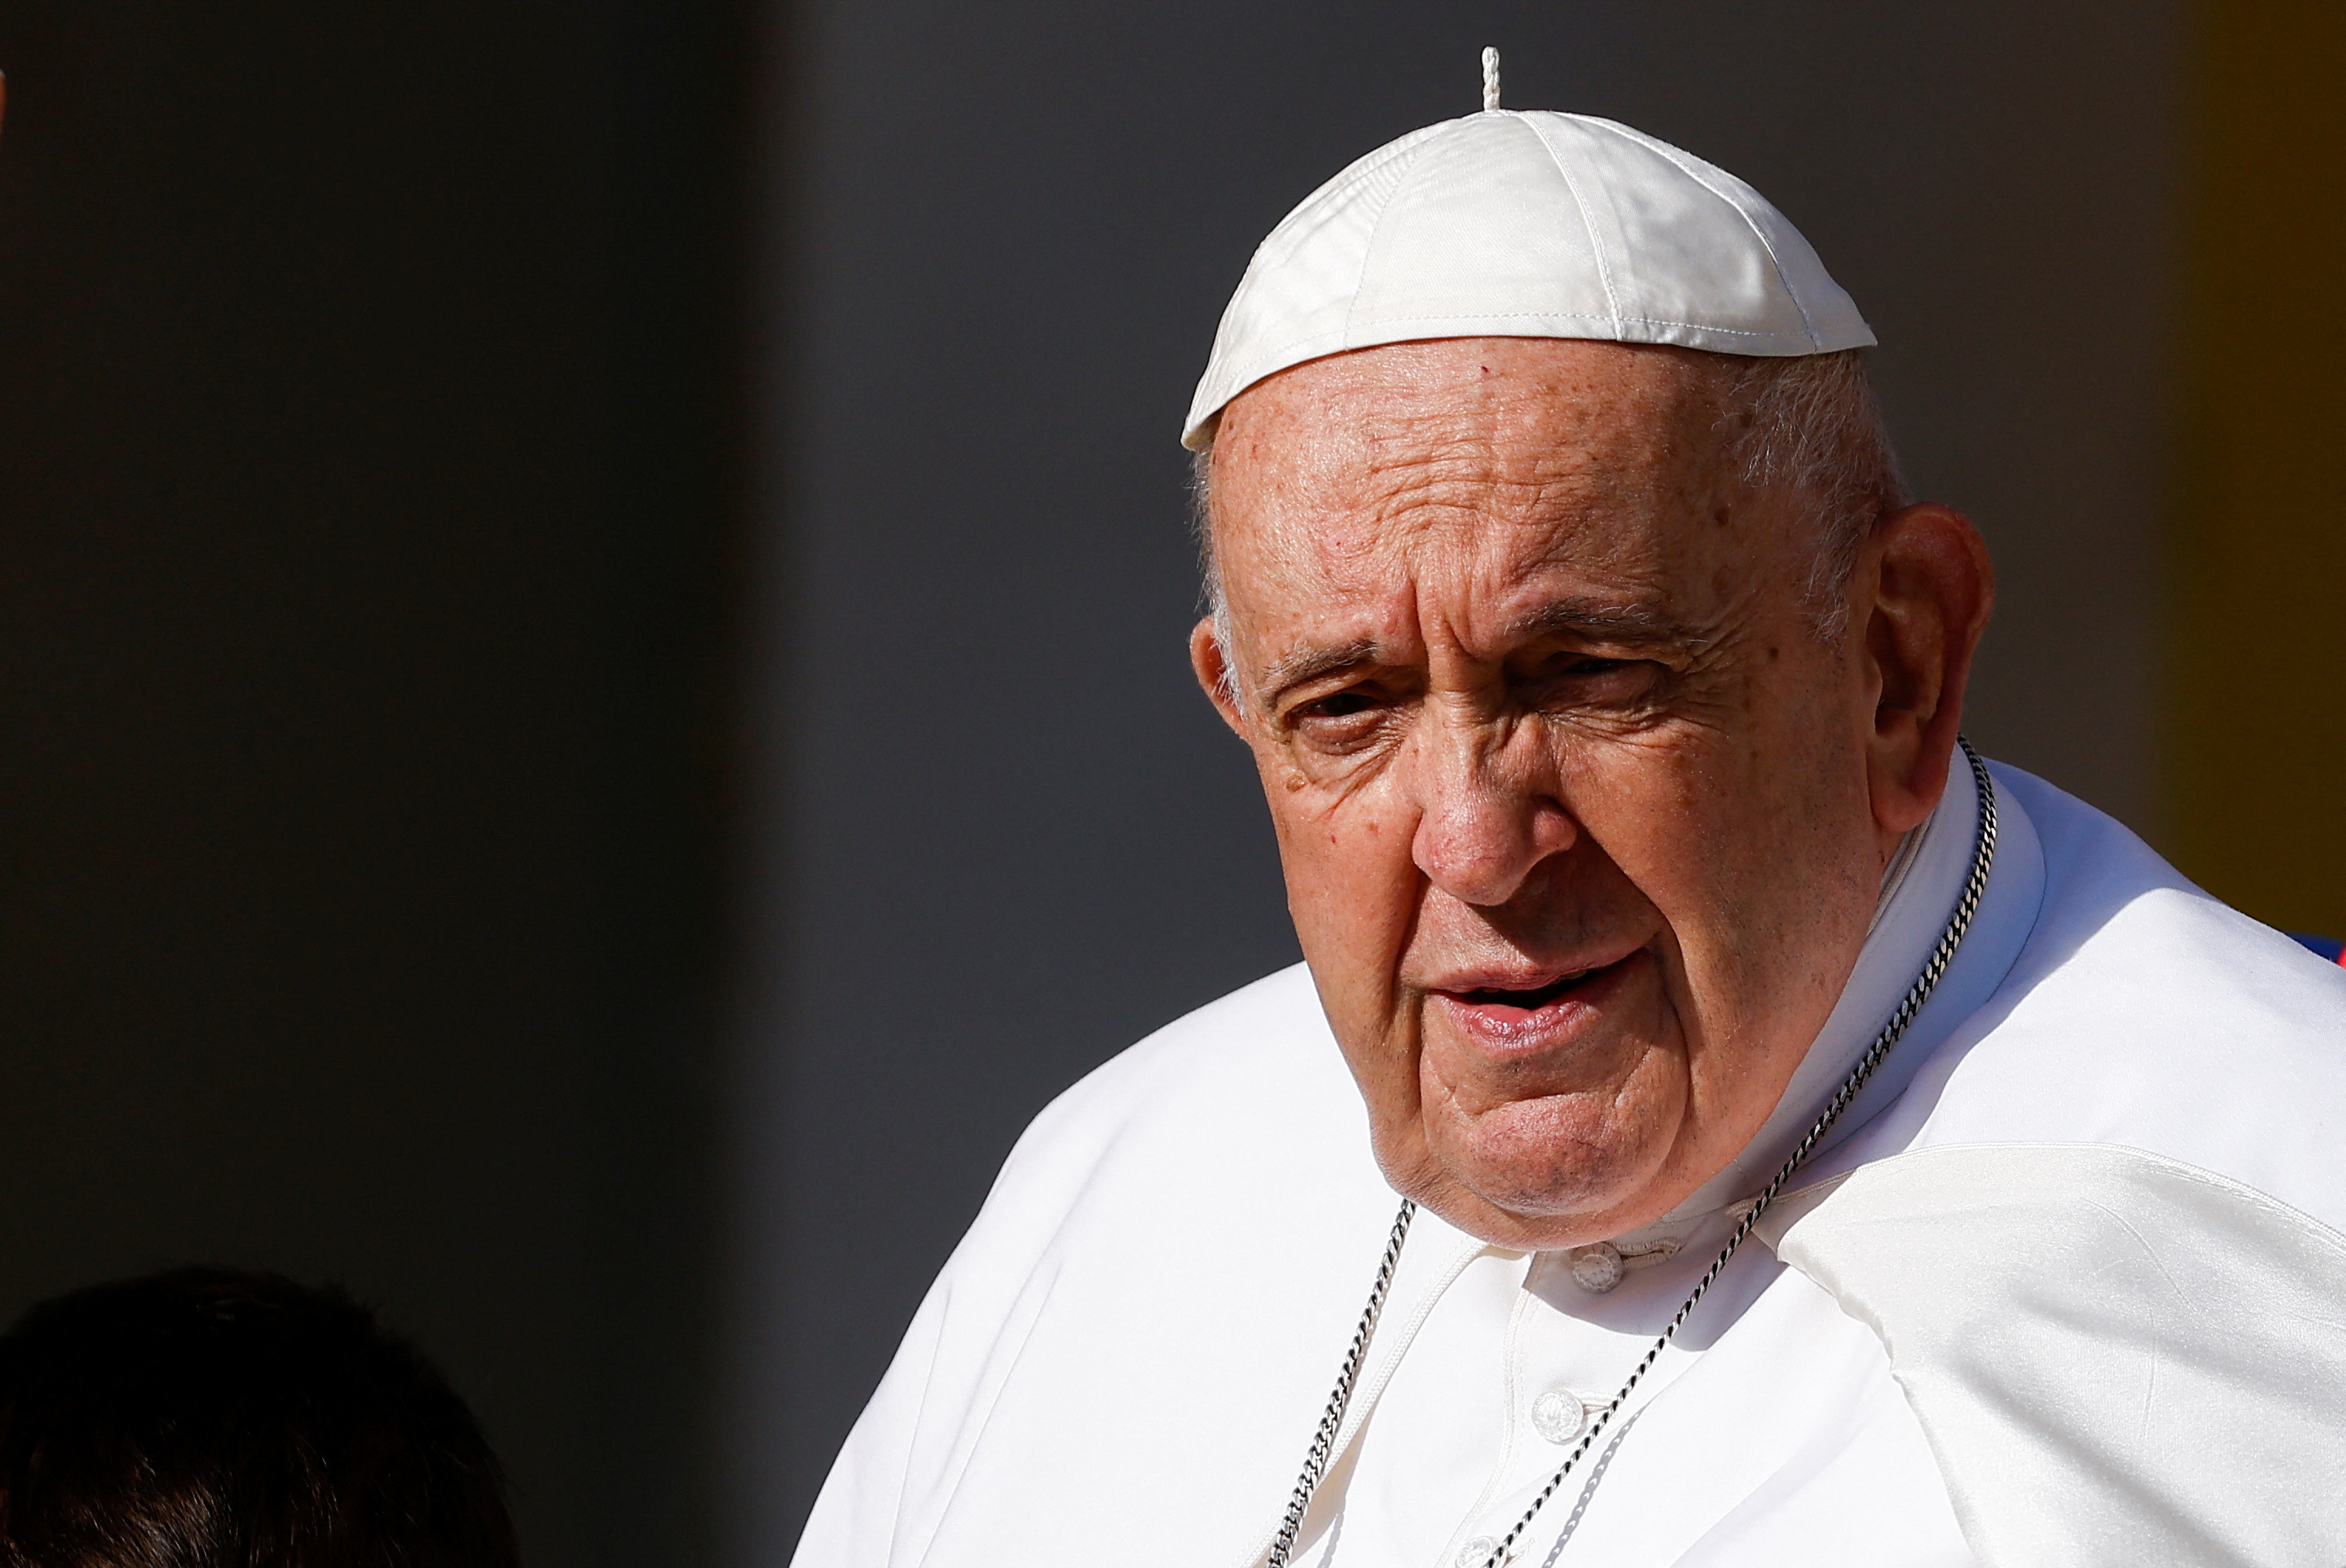 El Papa Francisco tuvo una buena noche tras su operación por una hernia abdominal